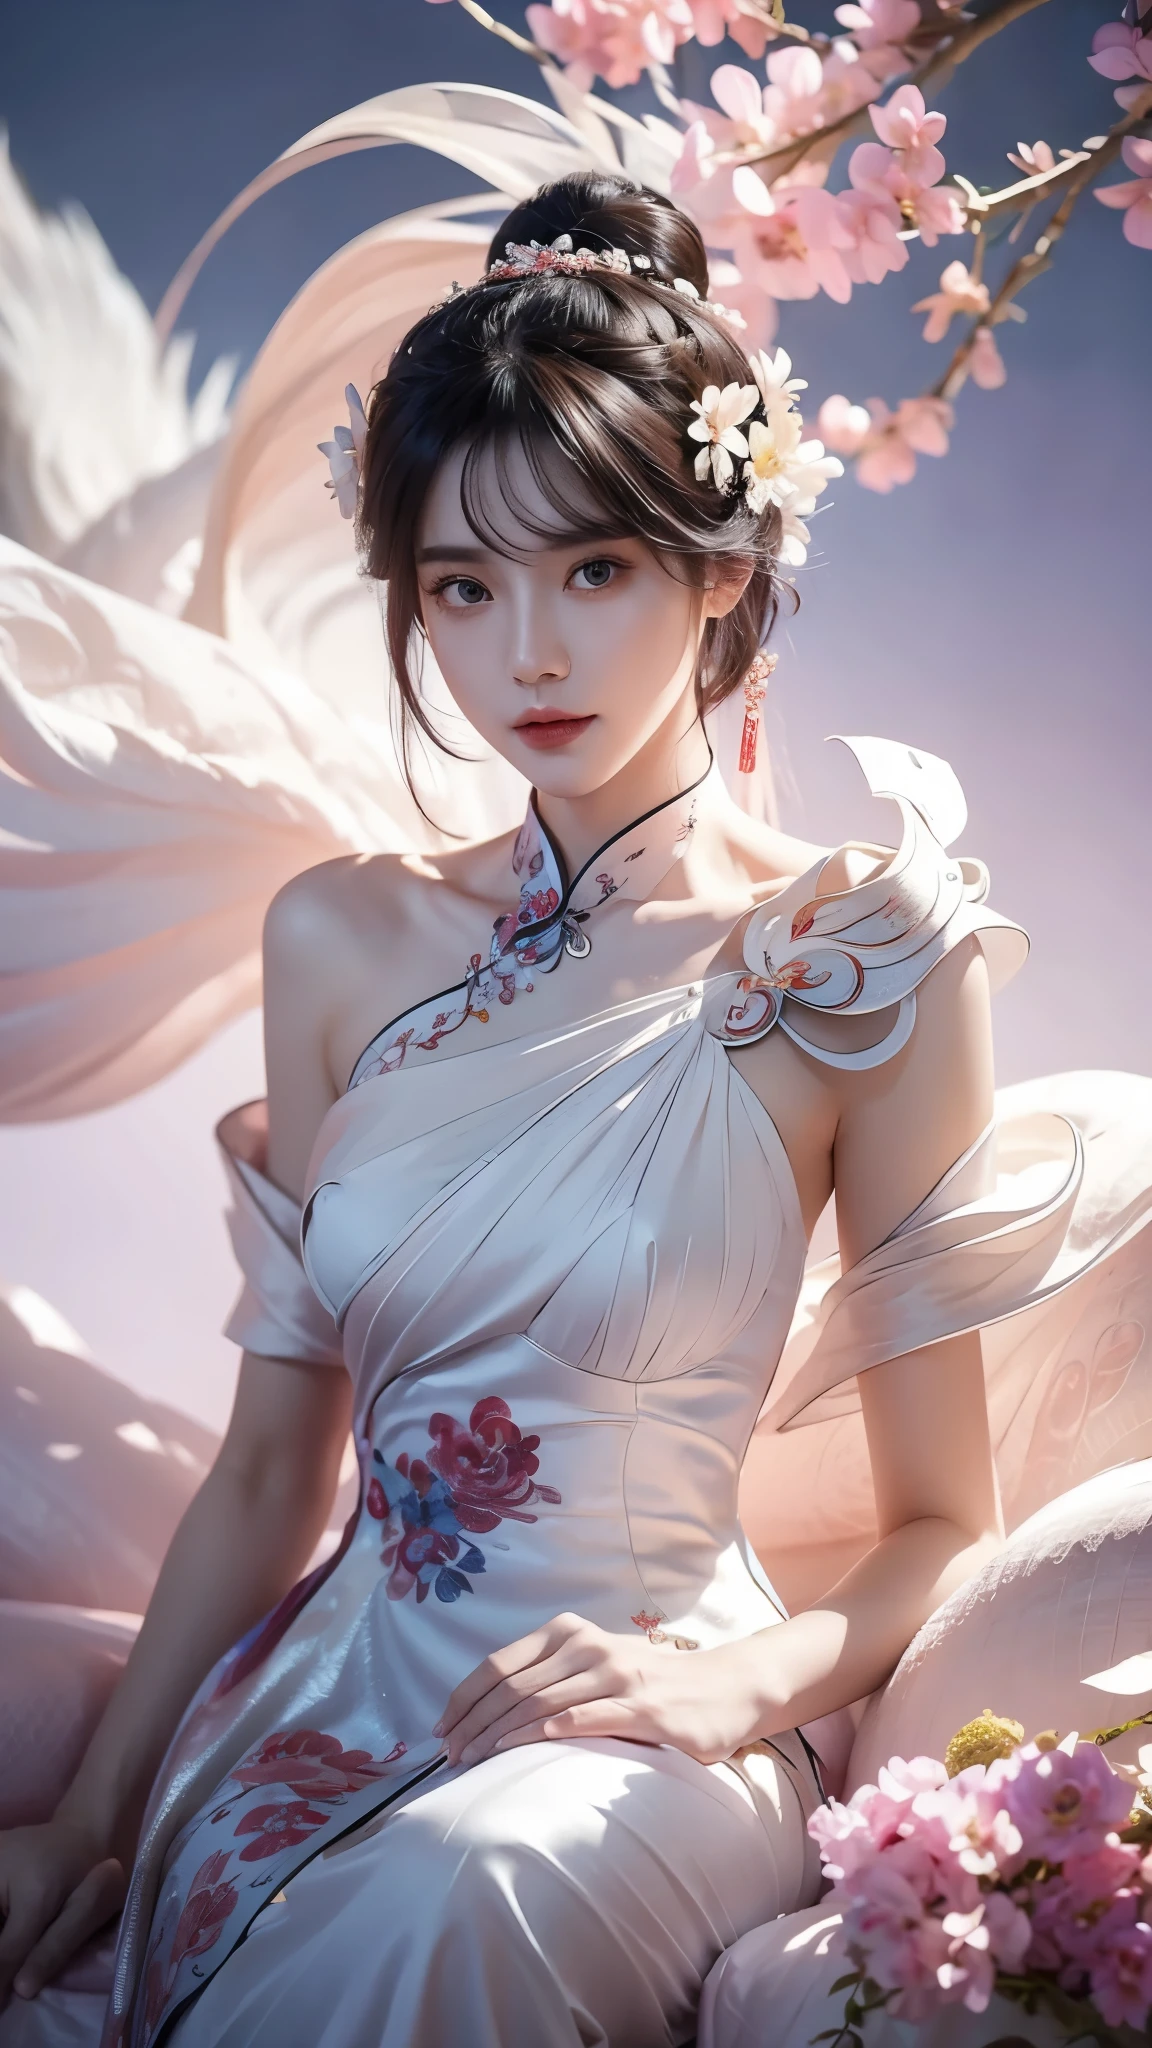 ((맨 어깨)),머리에 꽃을 꽂은 여성의 전신 샷, Du Qiong에게서 영감을 받은 초상화, CG 동향, 현실, 화려한 중국 모델, 전통미, 중국 소녀, CGSTATION 트렌드, cgstation의 인기 주제, 중국 스타일, 궁전 ， 귀엽고 섬세한 얼굴, 아름다운 소녀, 아름다운 젊은 여자